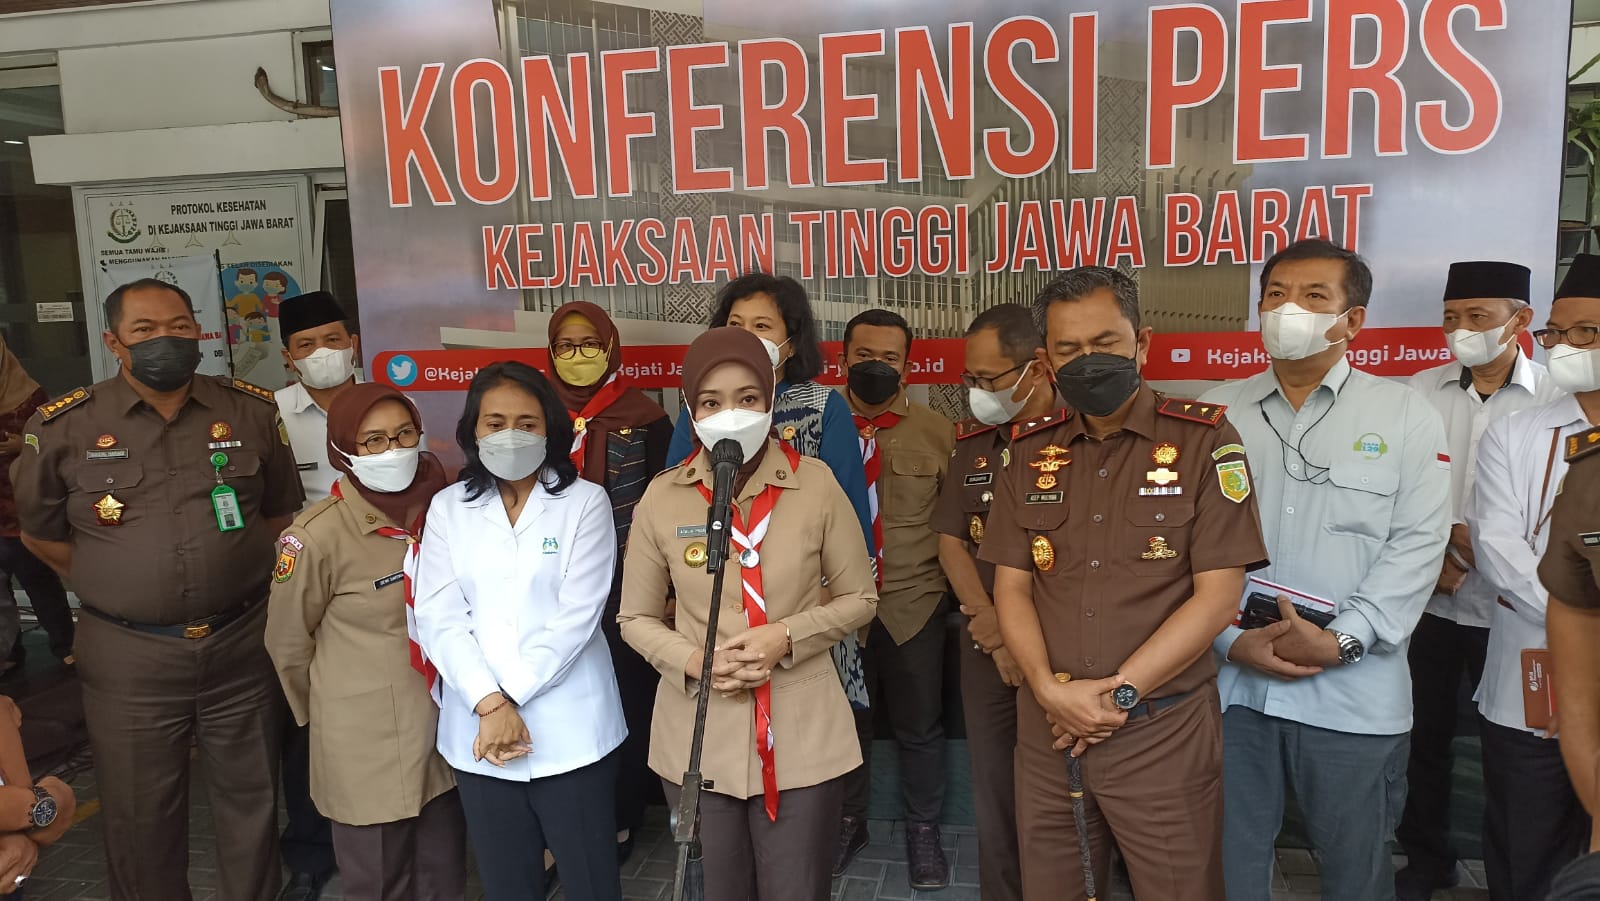 Istri Ridwan Kamil, Atalia Praratya saat memberikan penjelasan kasus pencabulan di Bandung. Selasa (14/12). (Foto: Sandi Nugraha)